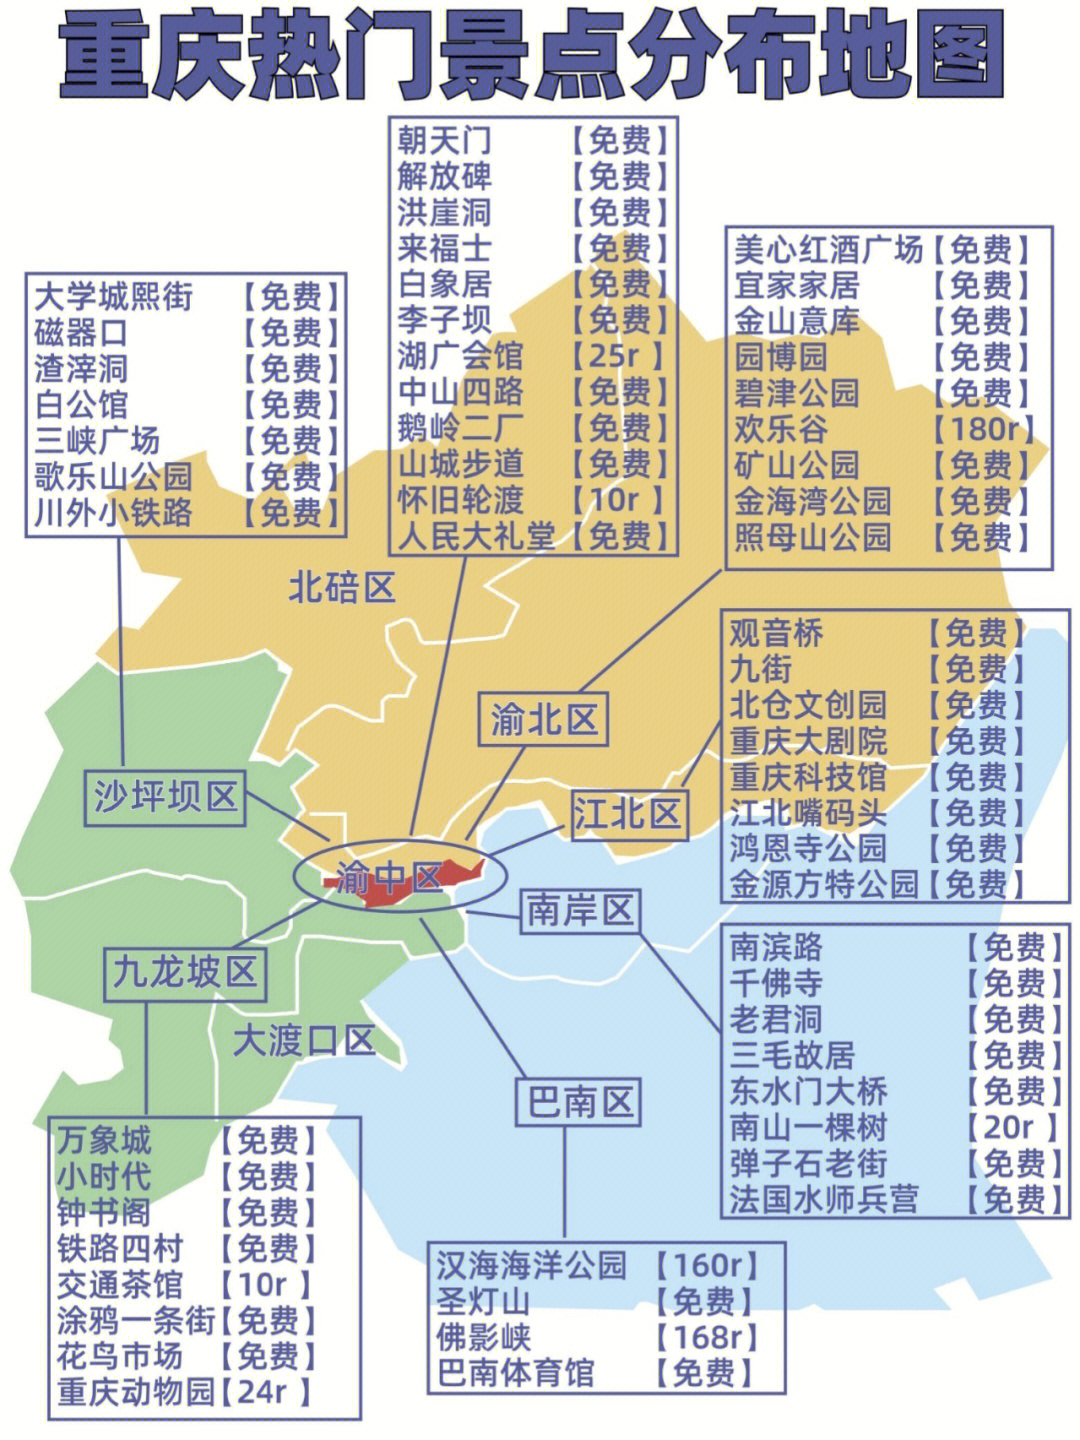 重庆市区景点分布图图片